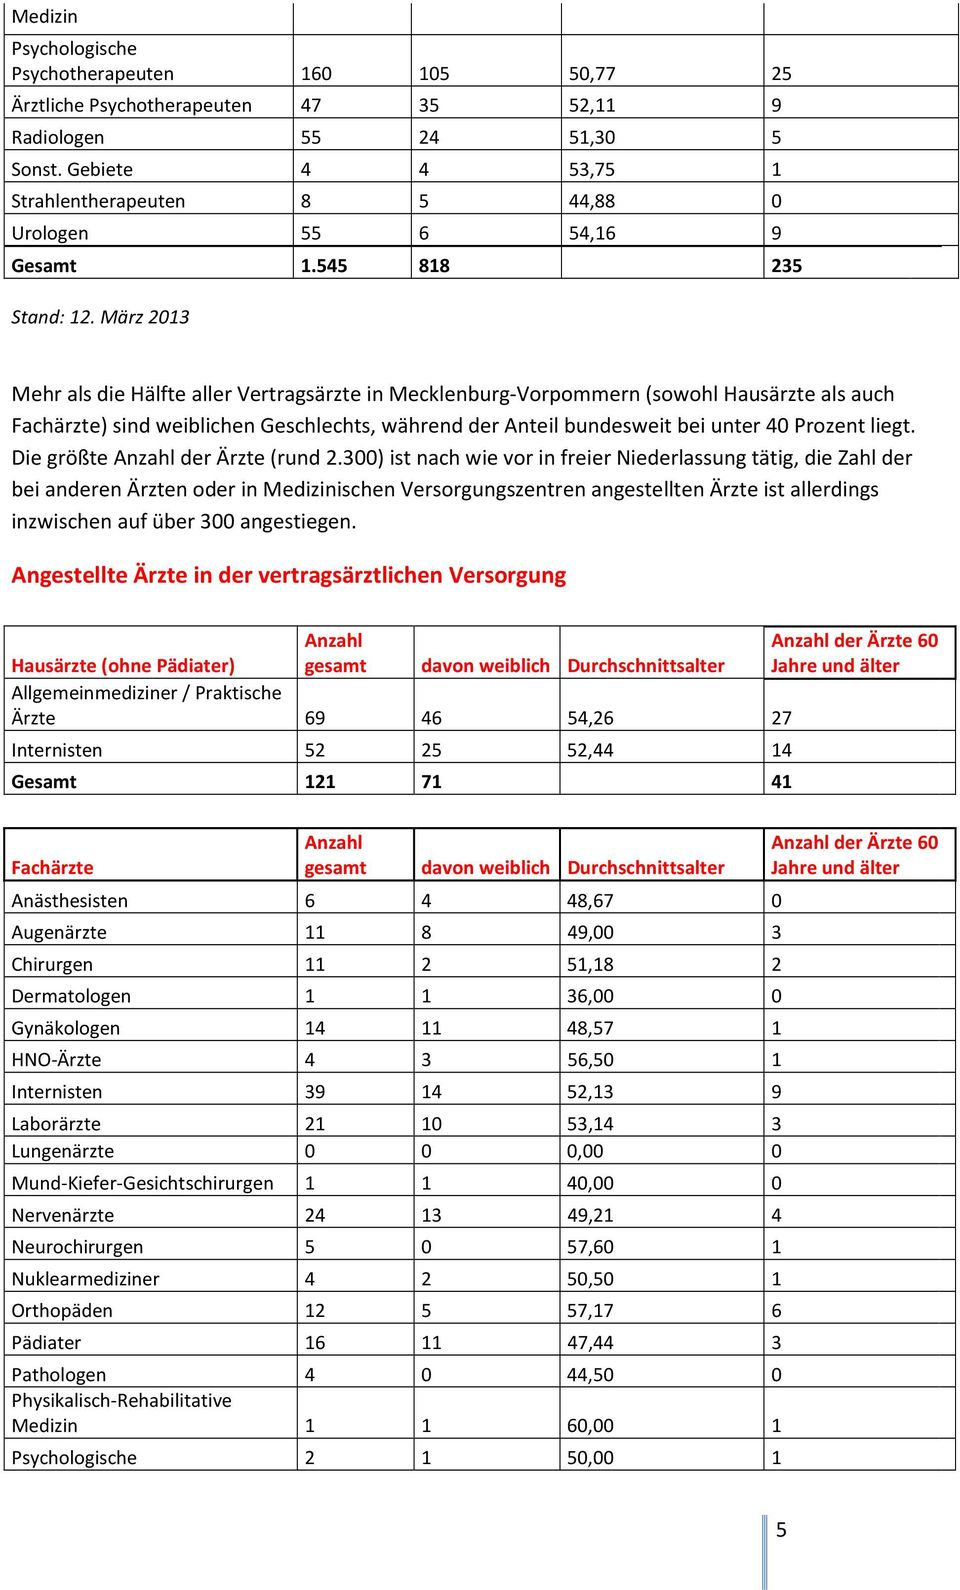 März 2013 Mehr als die Hälfte aller Vertragsärzte in Mecklenburg-Vorpommern (sowohl Hausärzte als auch Fachärzte) sind weiblichen Geschlechts, während der Anteil bundesweit bei unter 40 Prozent liegt.